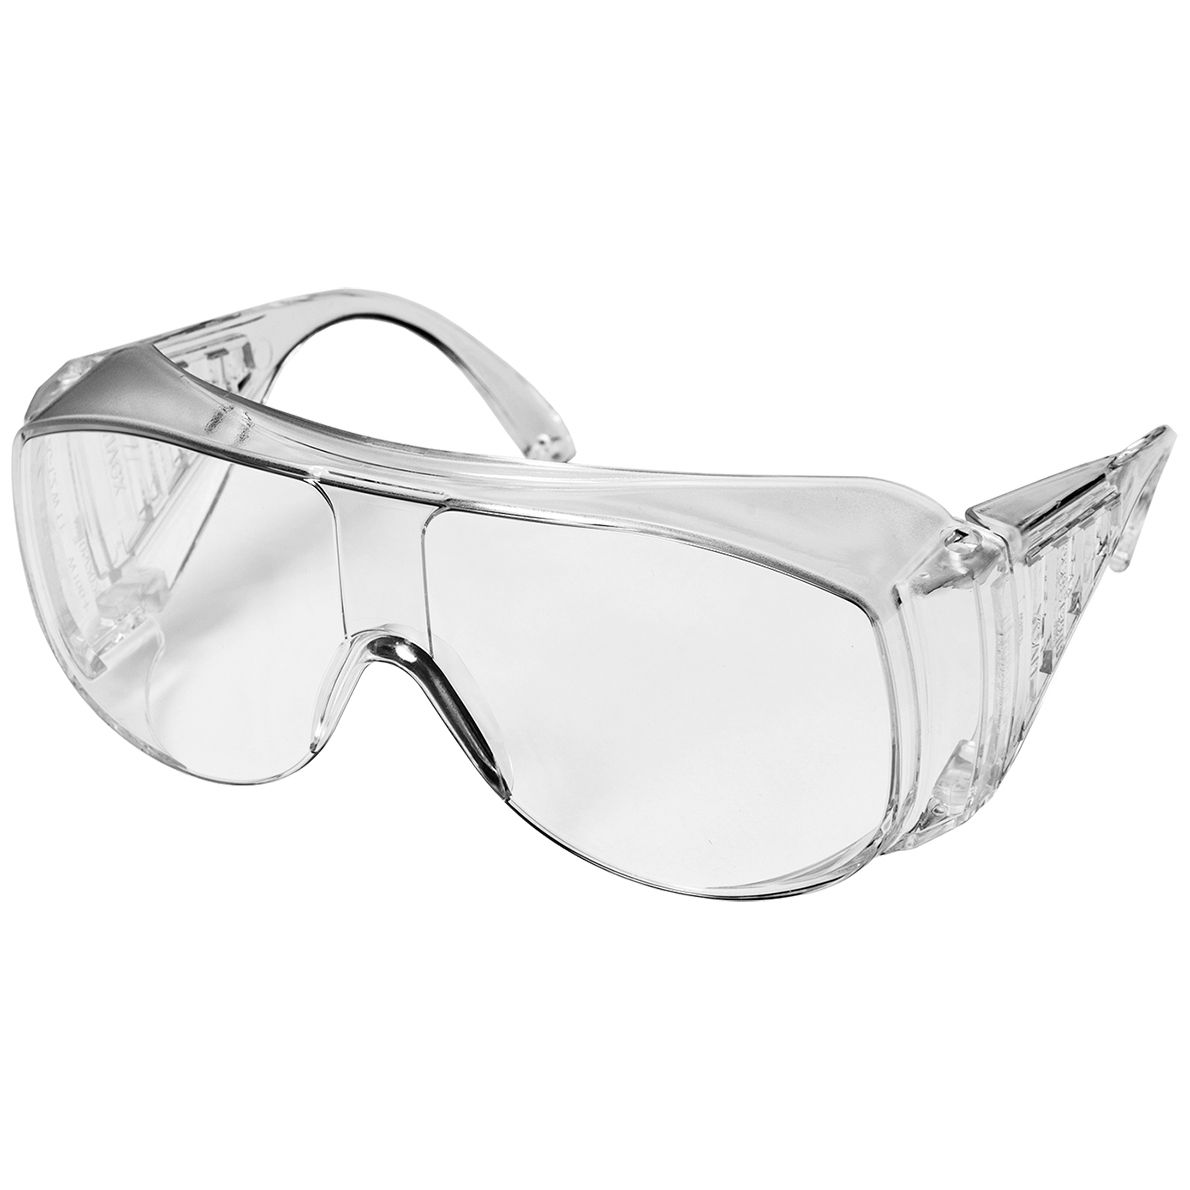 uvex 9161 Schutzbrille - Überbrille für Brillenträger - verschiedene kratzfeste Beschichtungen - EN 166 - Klar